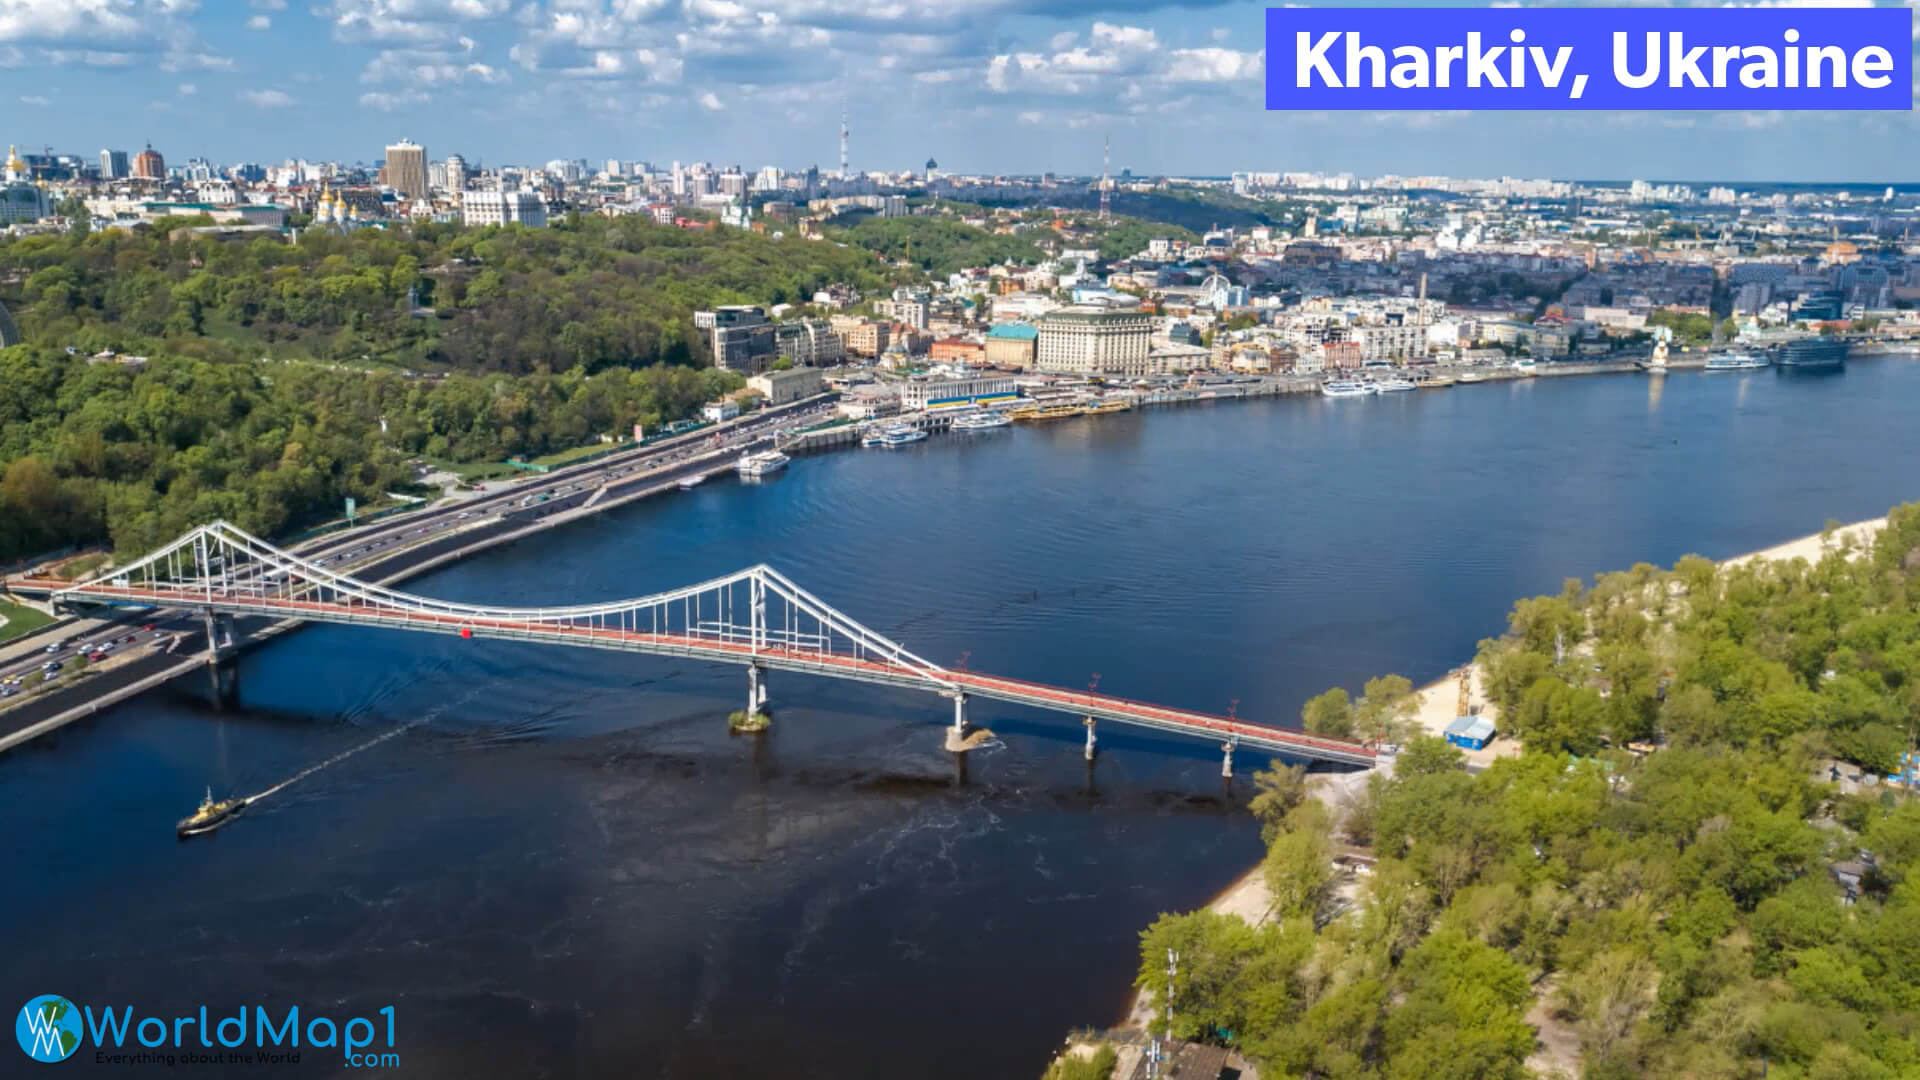 City of Kharkiv in Ukraine